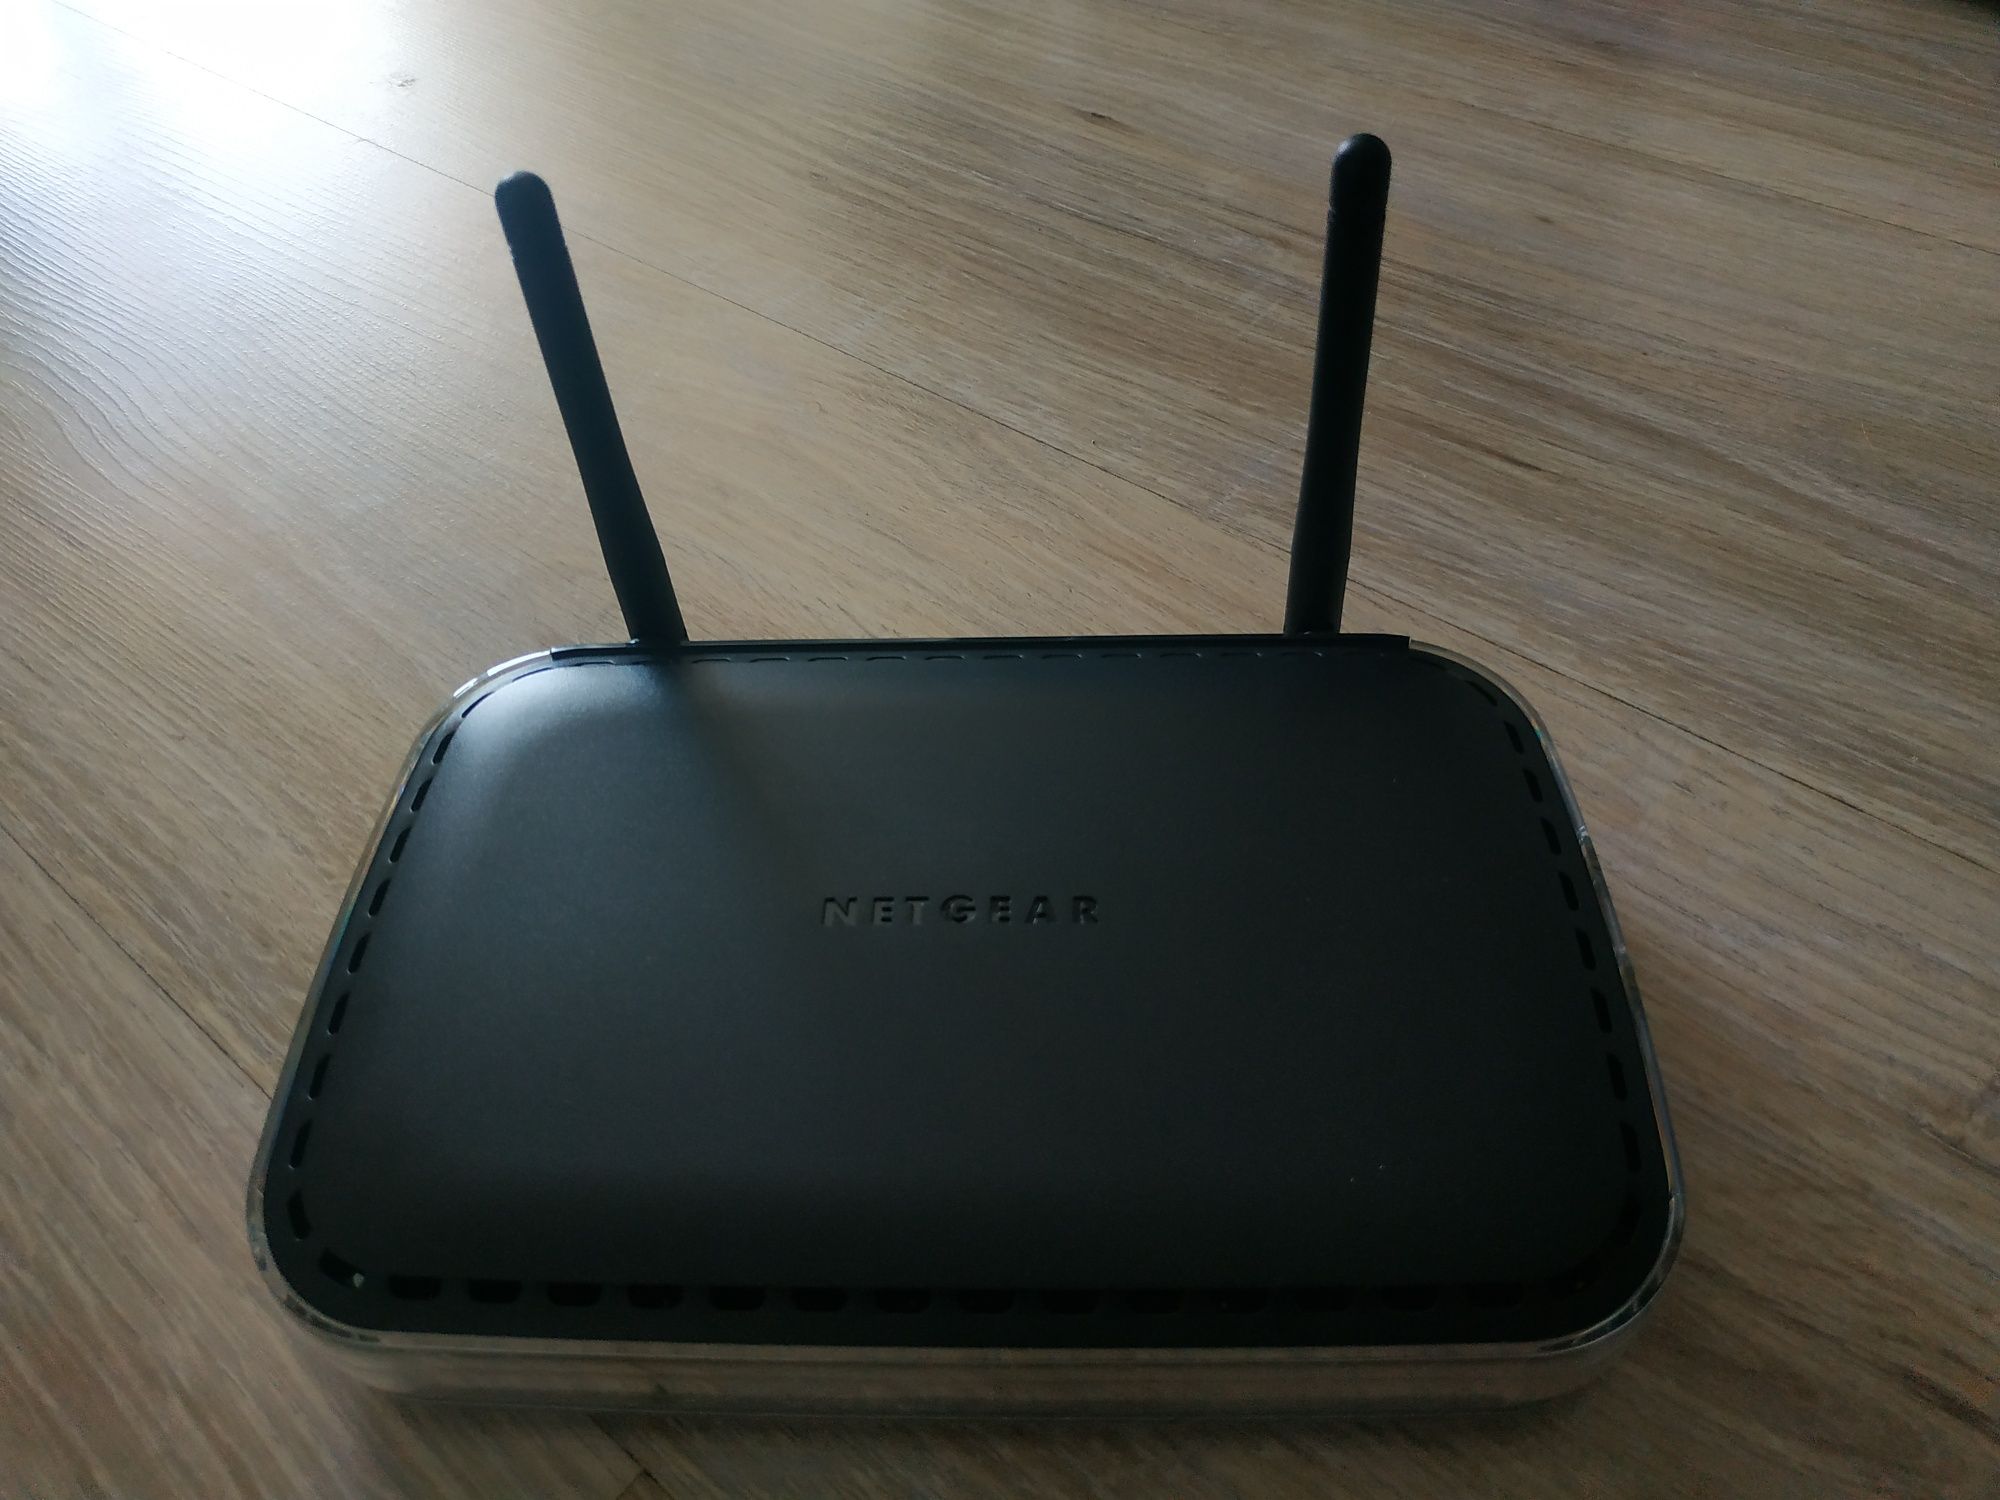 Netgear router DGN2000